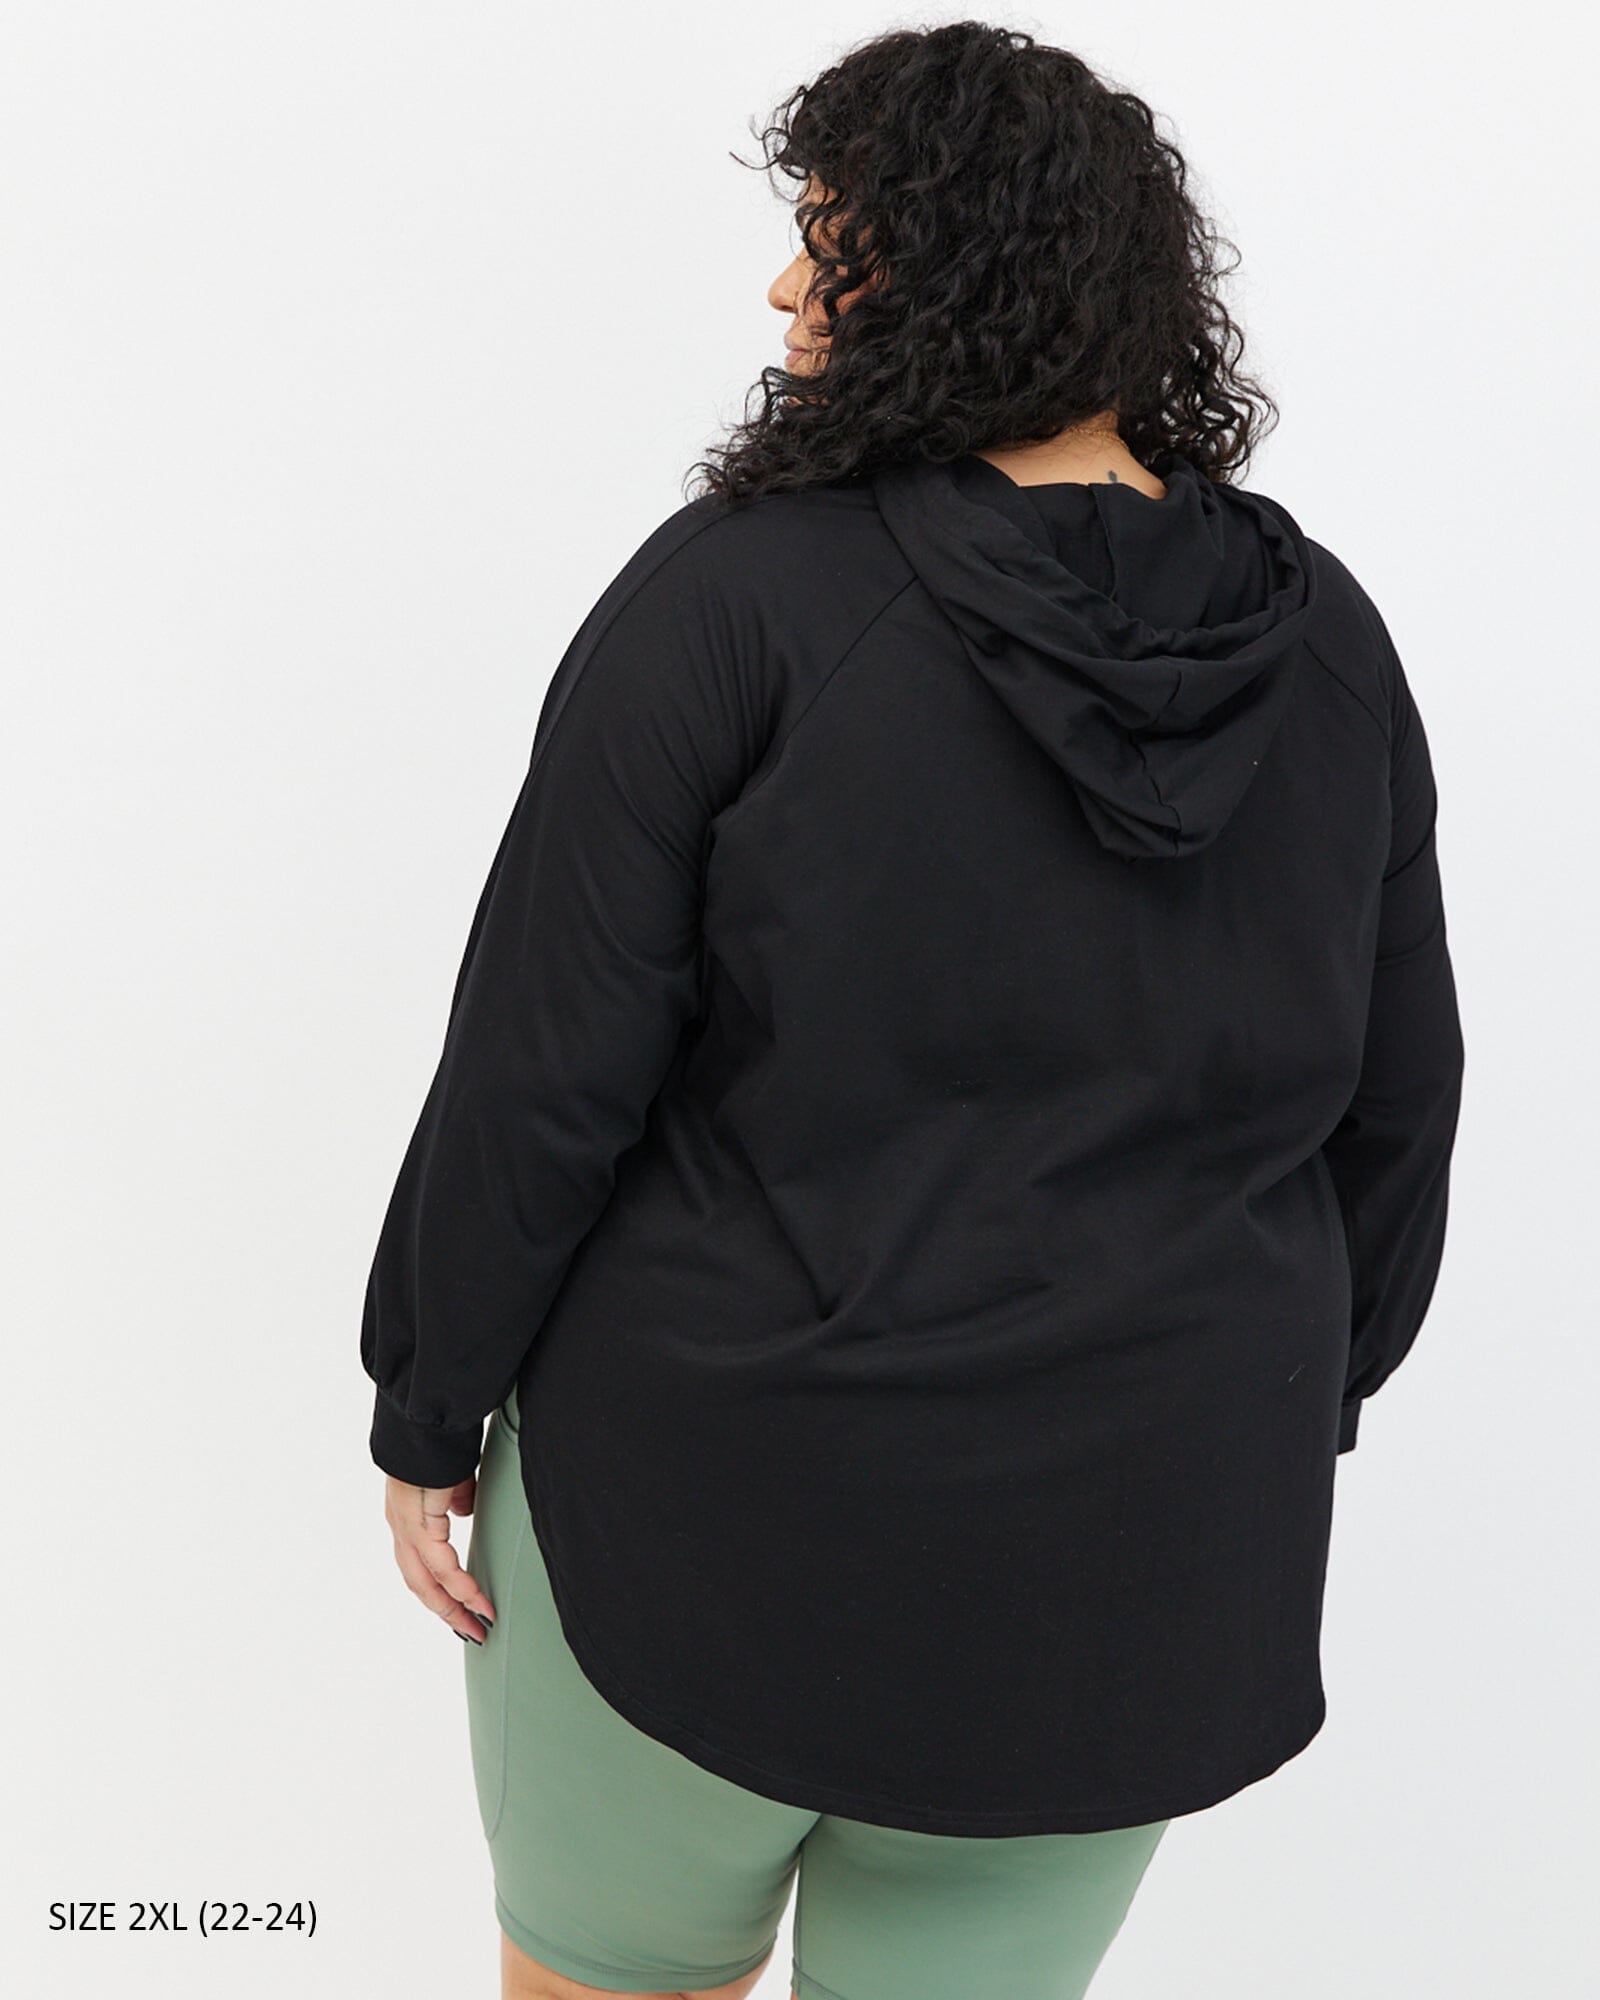 Chelle Long Sleeve Hoodie - Black T-shirt Avila the label 